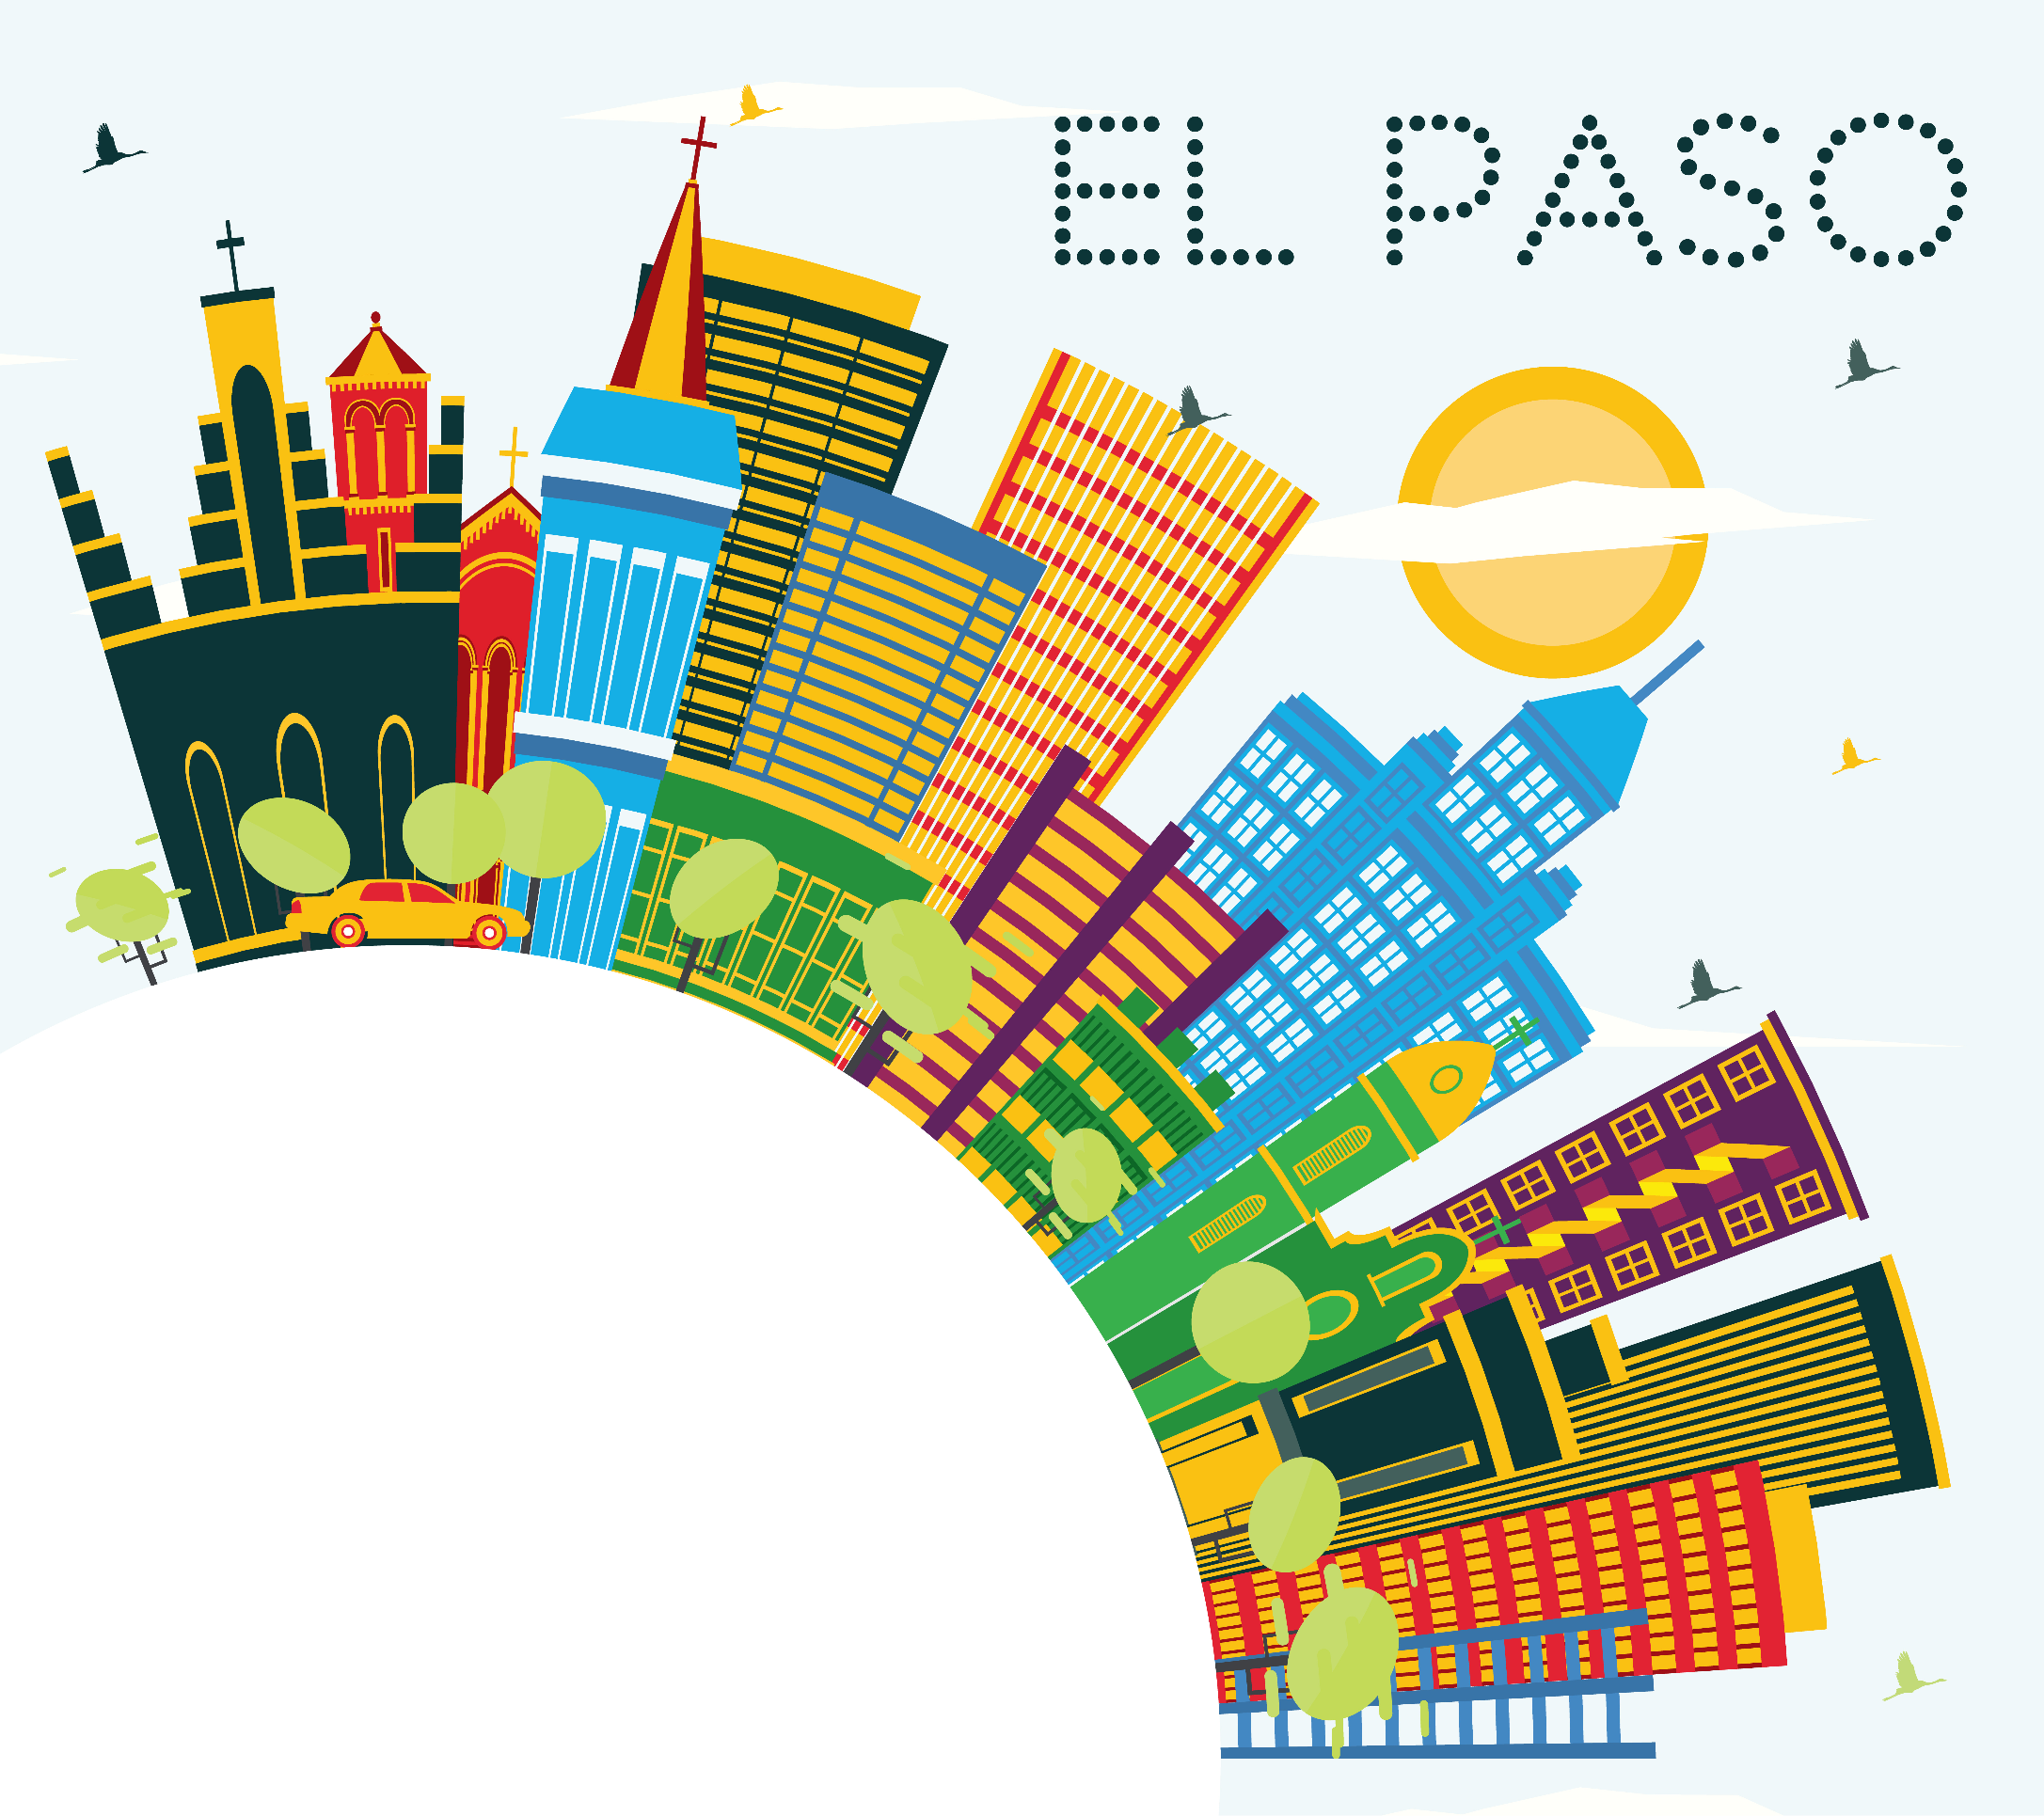 Circular depiction of the El Paso, Texas skyline.